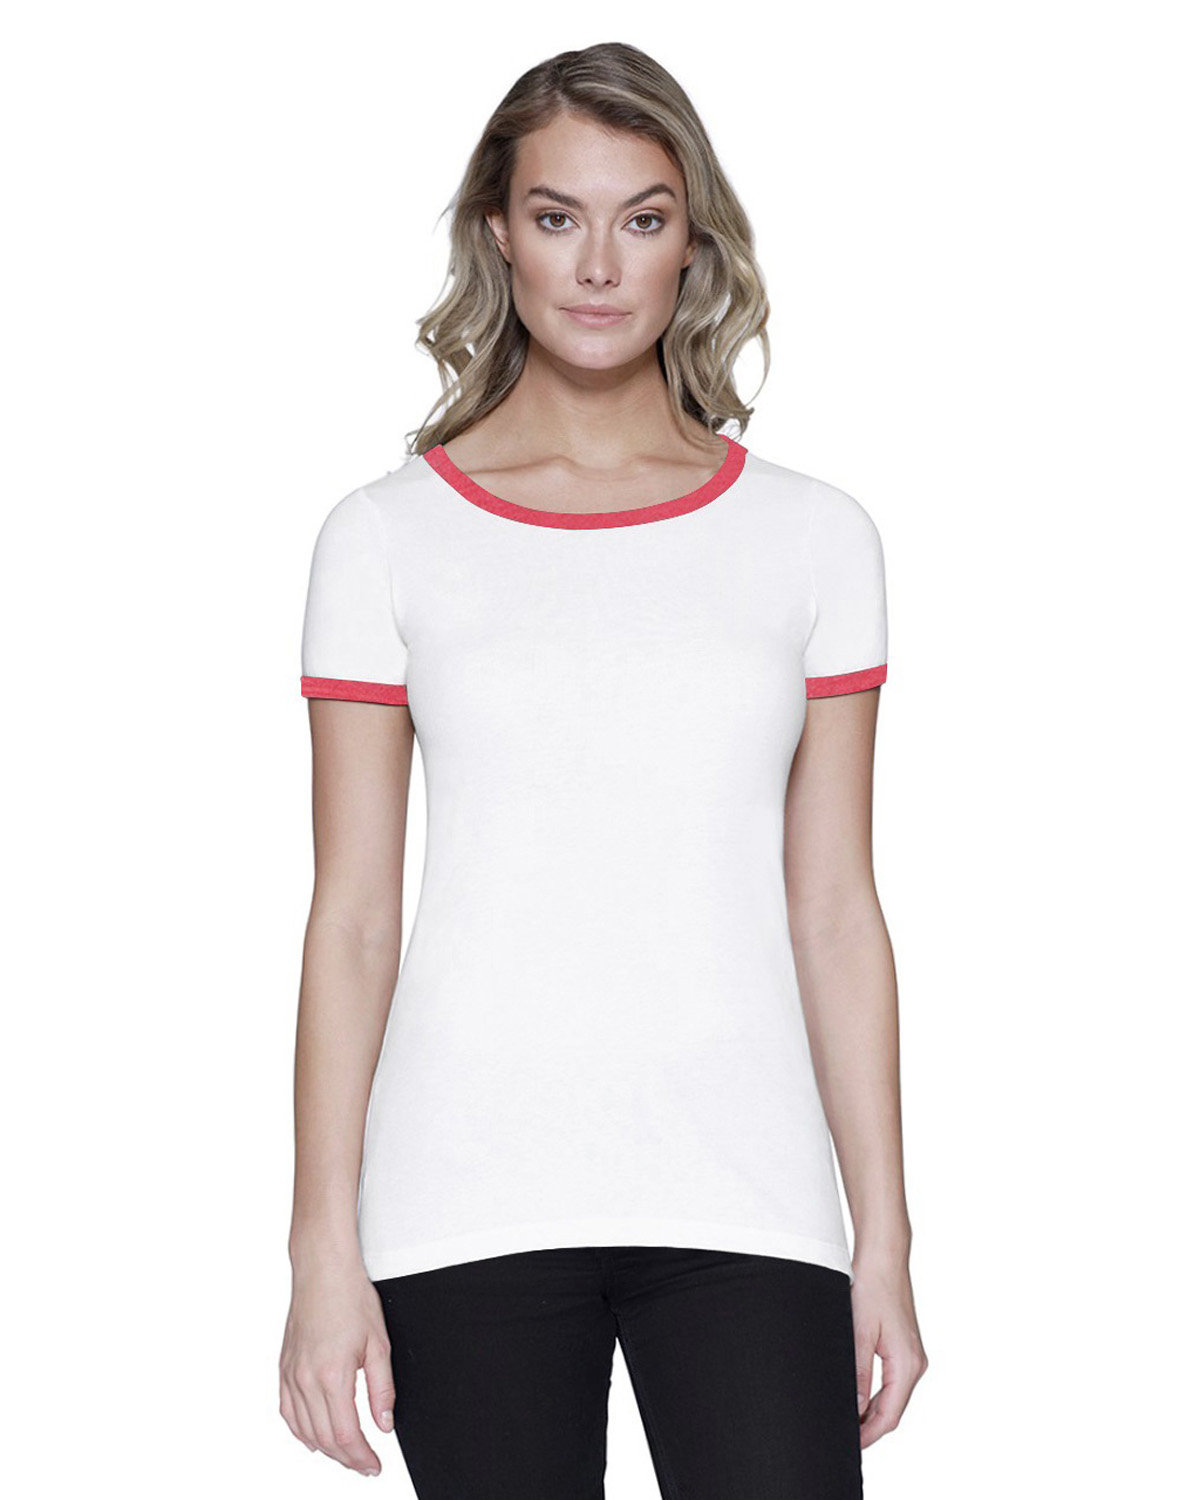 StarTee Ladies' CVC Ringer T-Shirt WHITE/ RED HTHR 